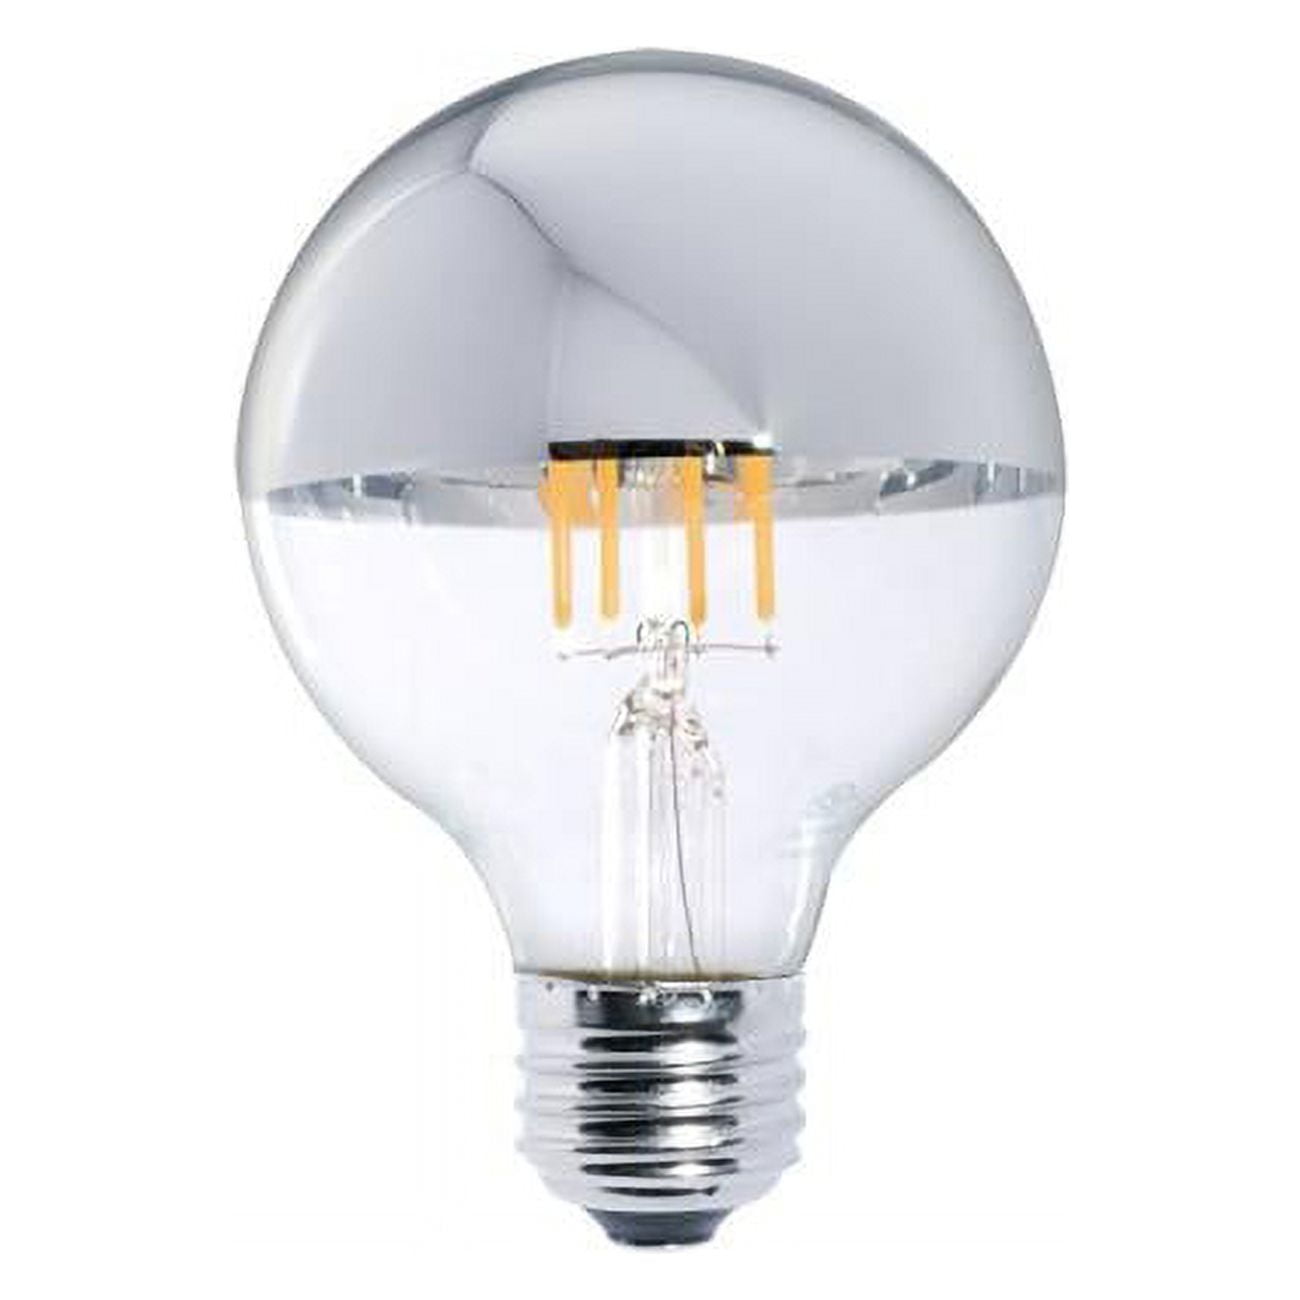 Picture of Bulbrite Pack of (2) 5 Watt Dimmable Half Chrome G25 LED Light Bulbs with Medium (E26) Base  2700K Warm White Light  450 Lumens